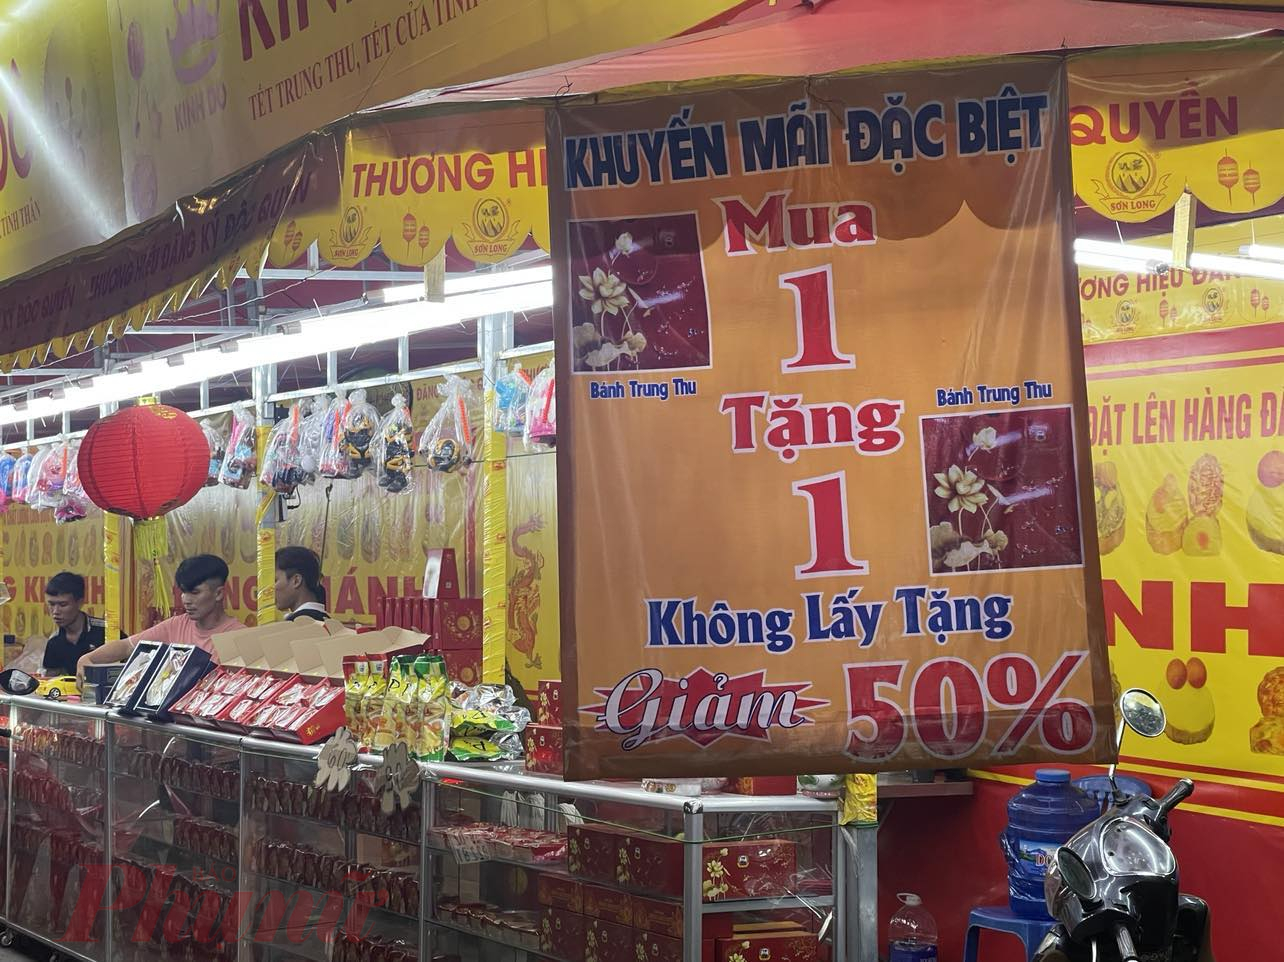 Nhiều điểm giăng băng rôn giảm giá 50%, mua 1 tặng 1 bánh trung thu để hút khách - Ảnh: Nguyễn Cẩm